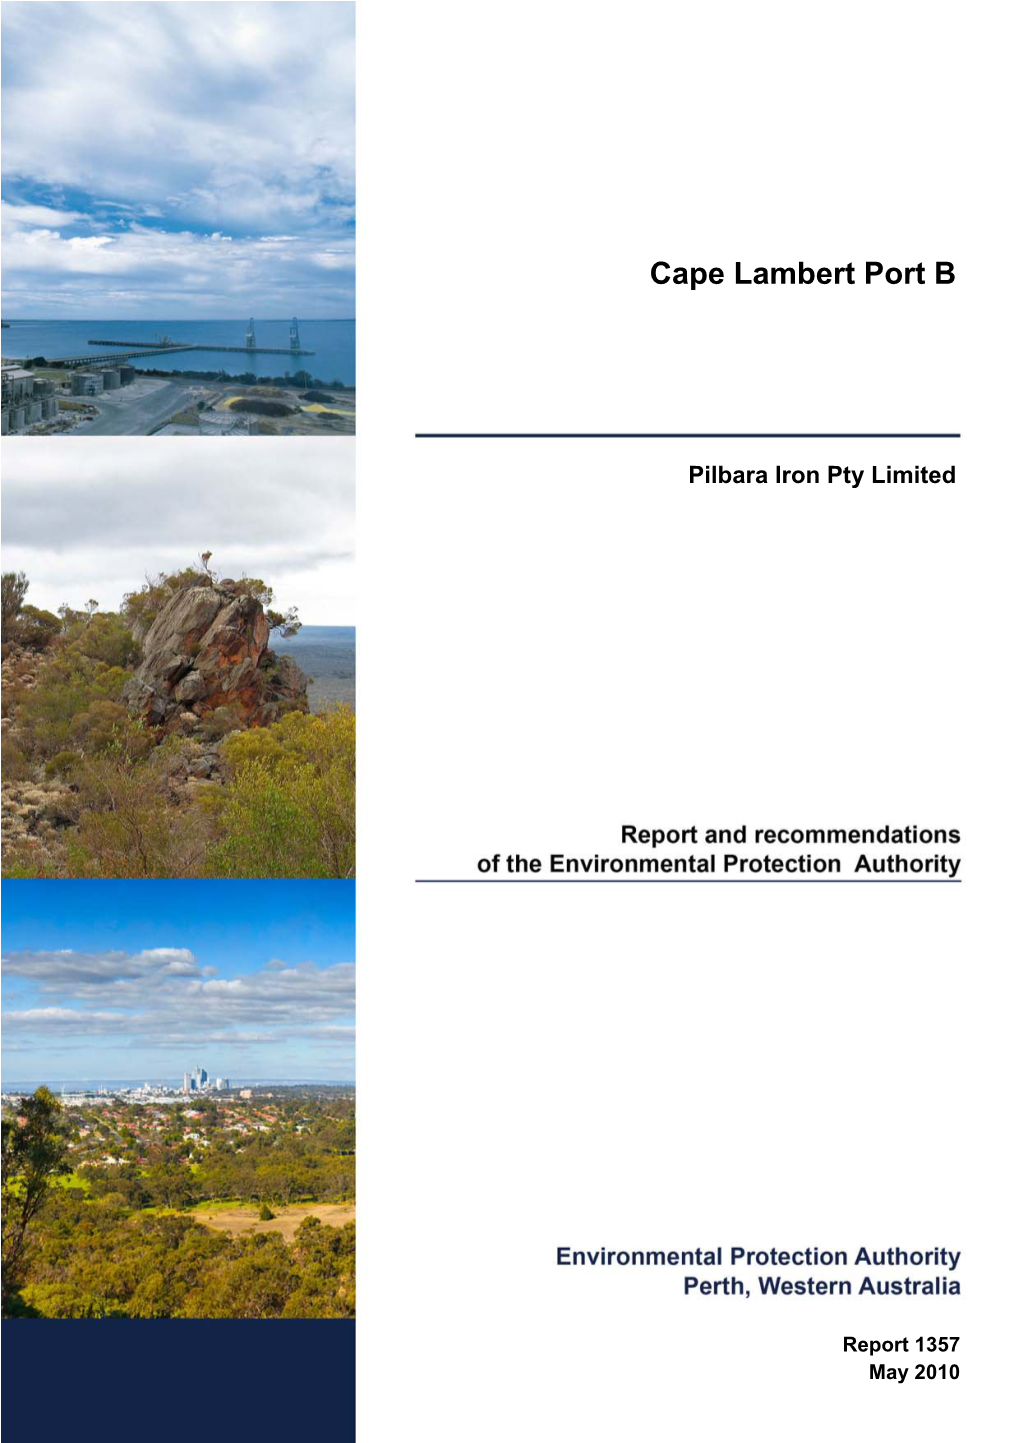 Cape Lambert Port B